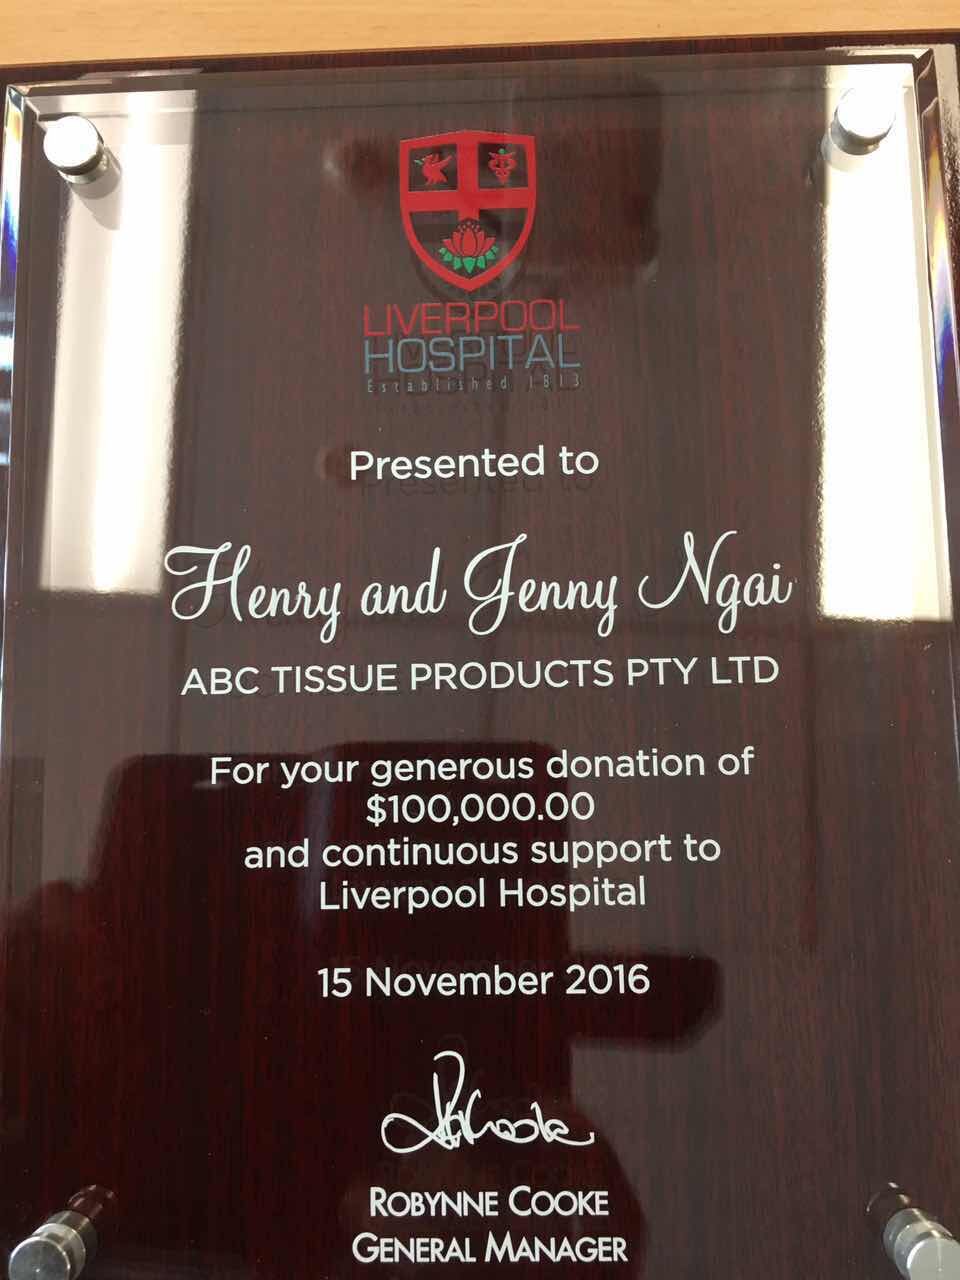 6 2 澳大利亚华裔企业家慈善家魏基成夫妇向悉尼Liverpool医院捐赠10万澳币